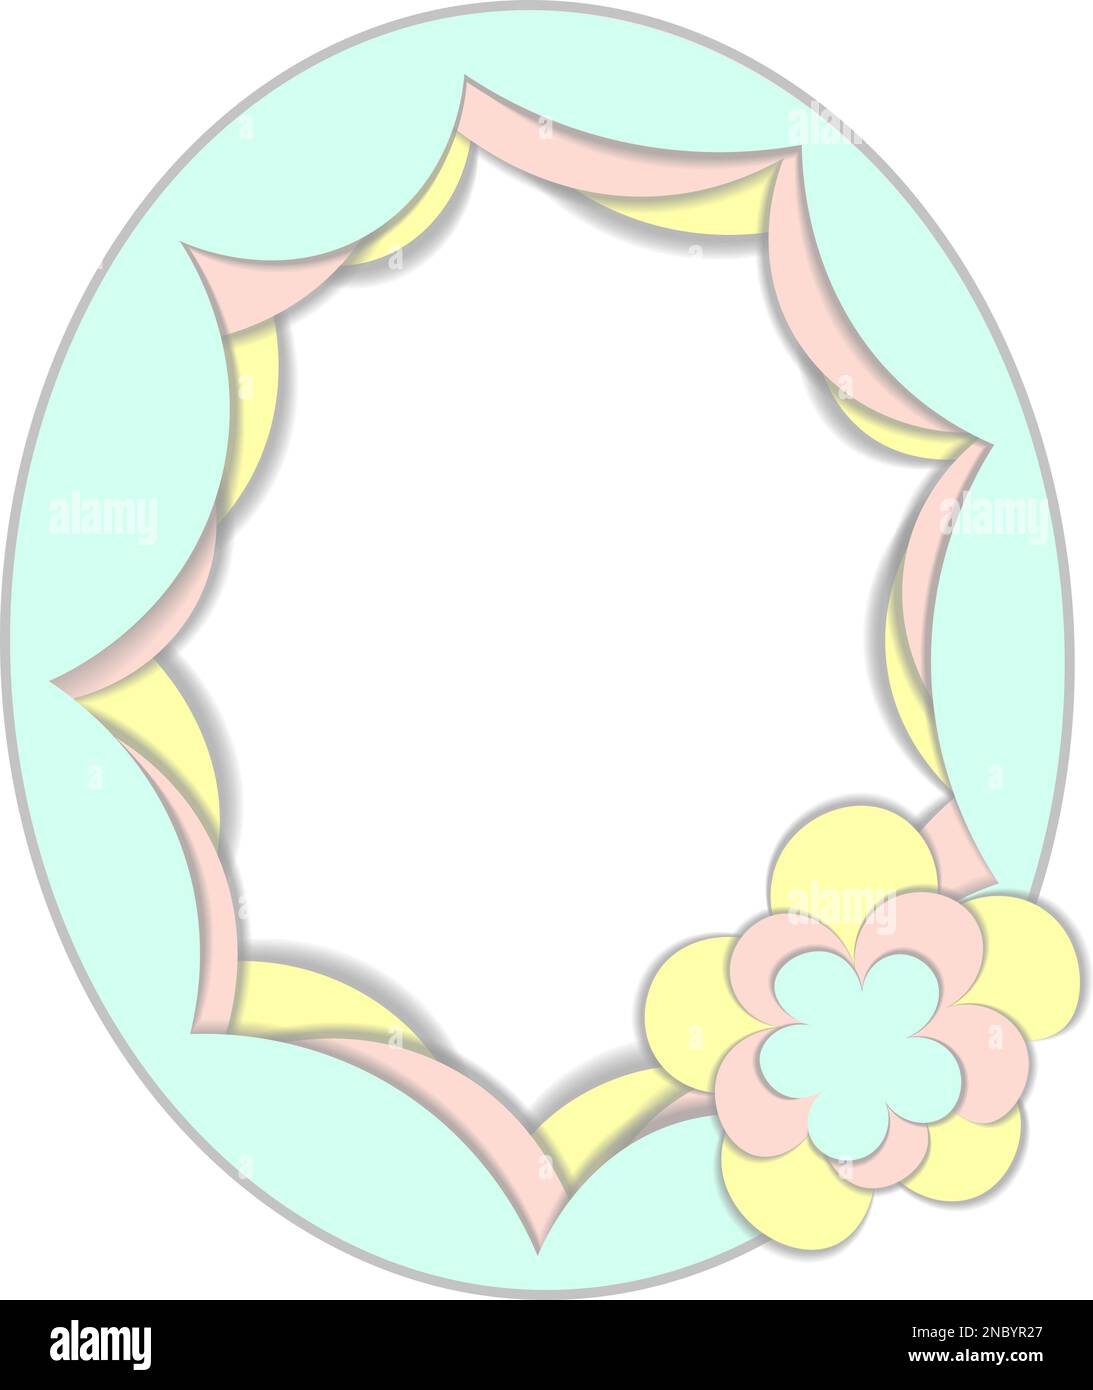 Bordure ovale de style feuille de papier plate décorée de fleurs Illustration de Vecteur